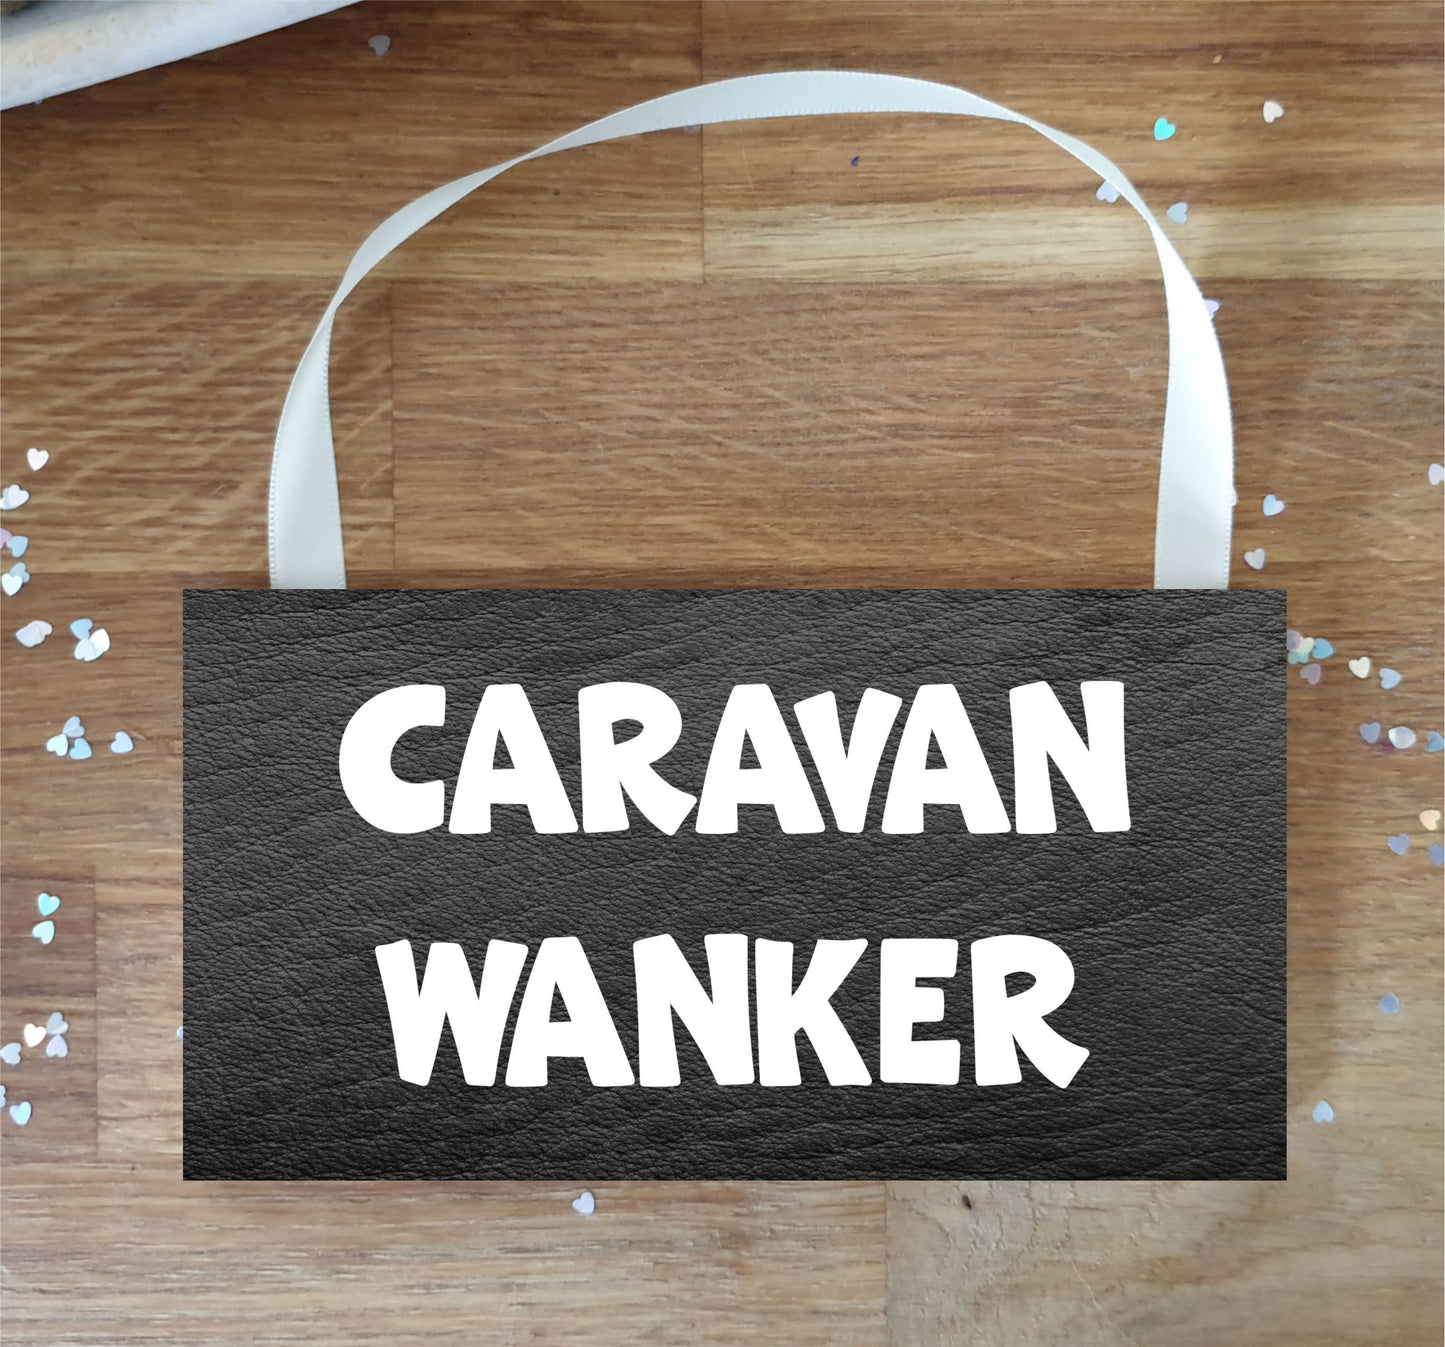 Caravan Plaque / Sign Gift - Caravan Wanker - Rude Cheeky Cute Fun Novelty Present